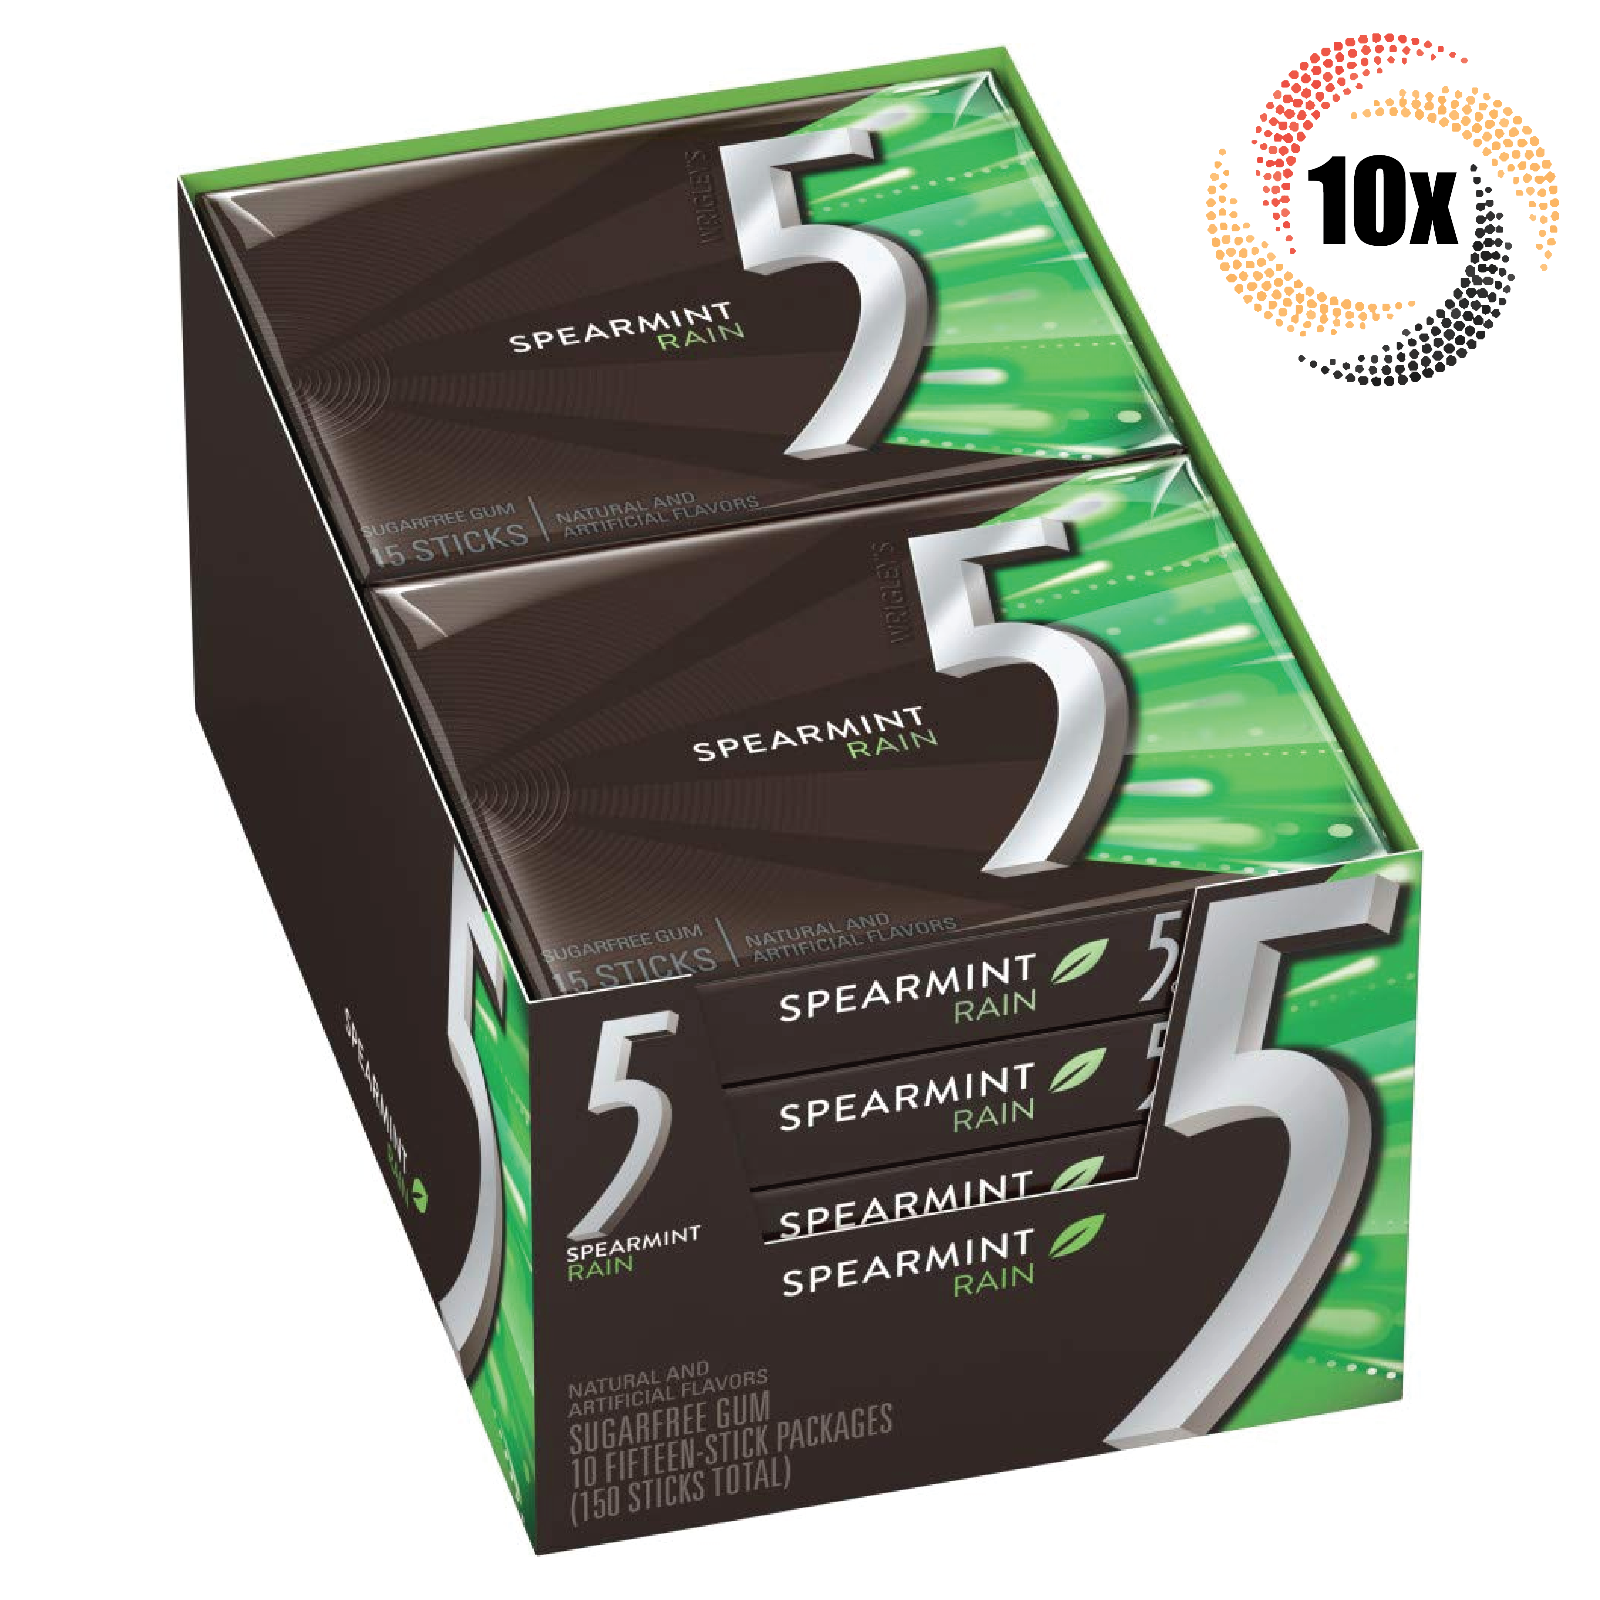 Full Box 10x Packs 5 Gum Spearmint Rain Flavor Sugar Free | 15 Sticks Per Pack - $28.83